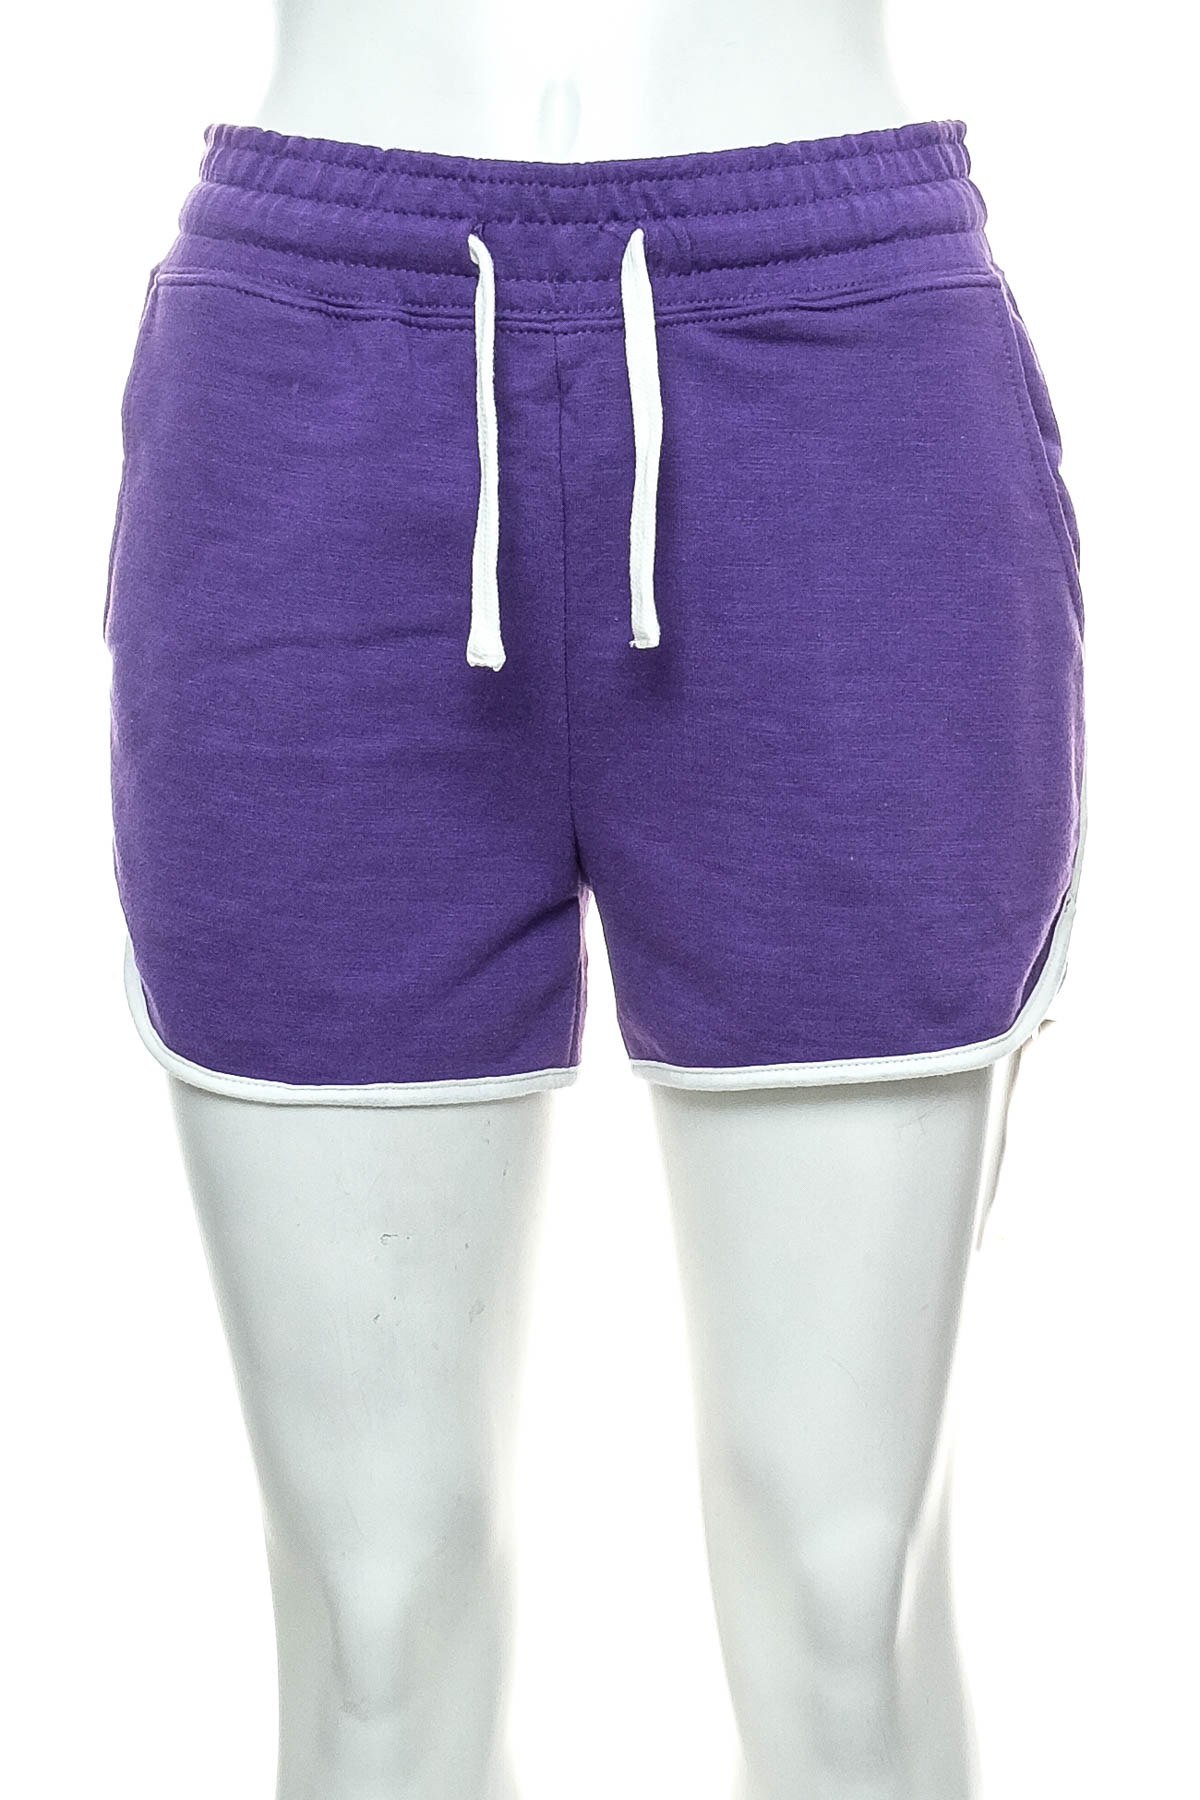 Female shorts - Dunnes - 0